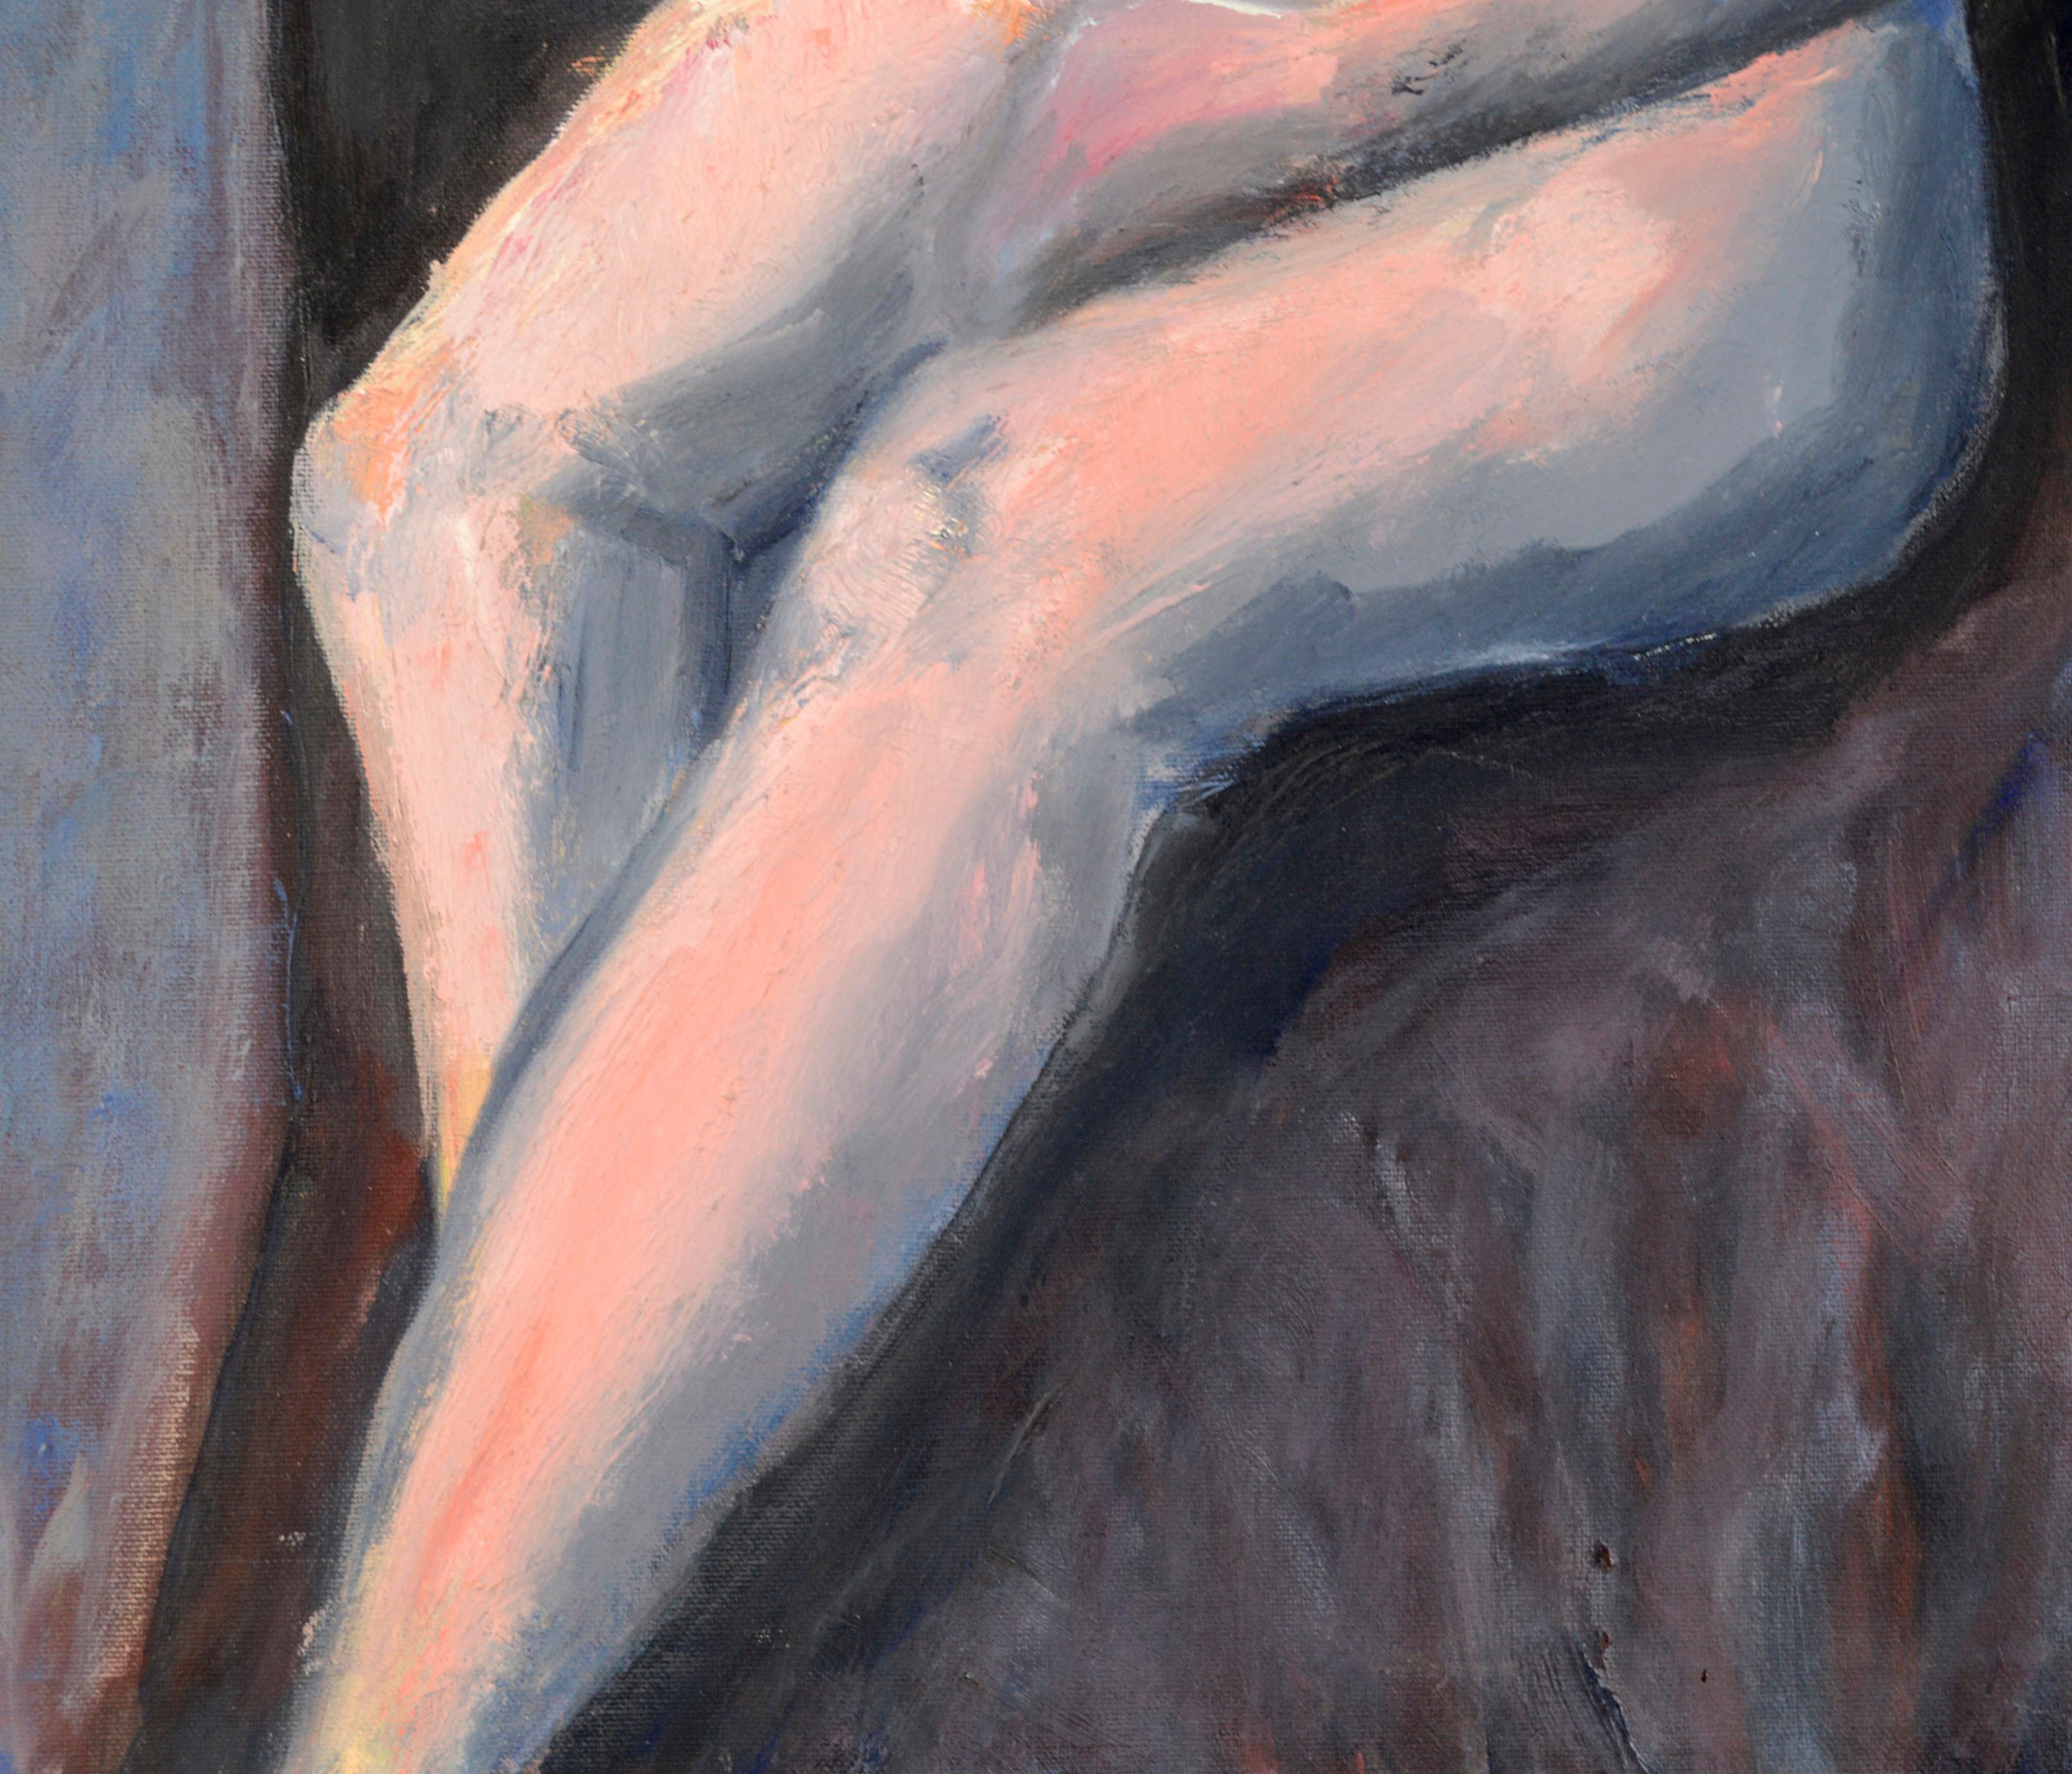 Peinture moderniste colorée d'une femme assise, réalisée par un artiste inconnu. Cette œuvre figurative contemporaine utilise des textures et des couleurs expressives, avec une palette de roses, d'oranges et de bleus. 

Non signée.
Pas de